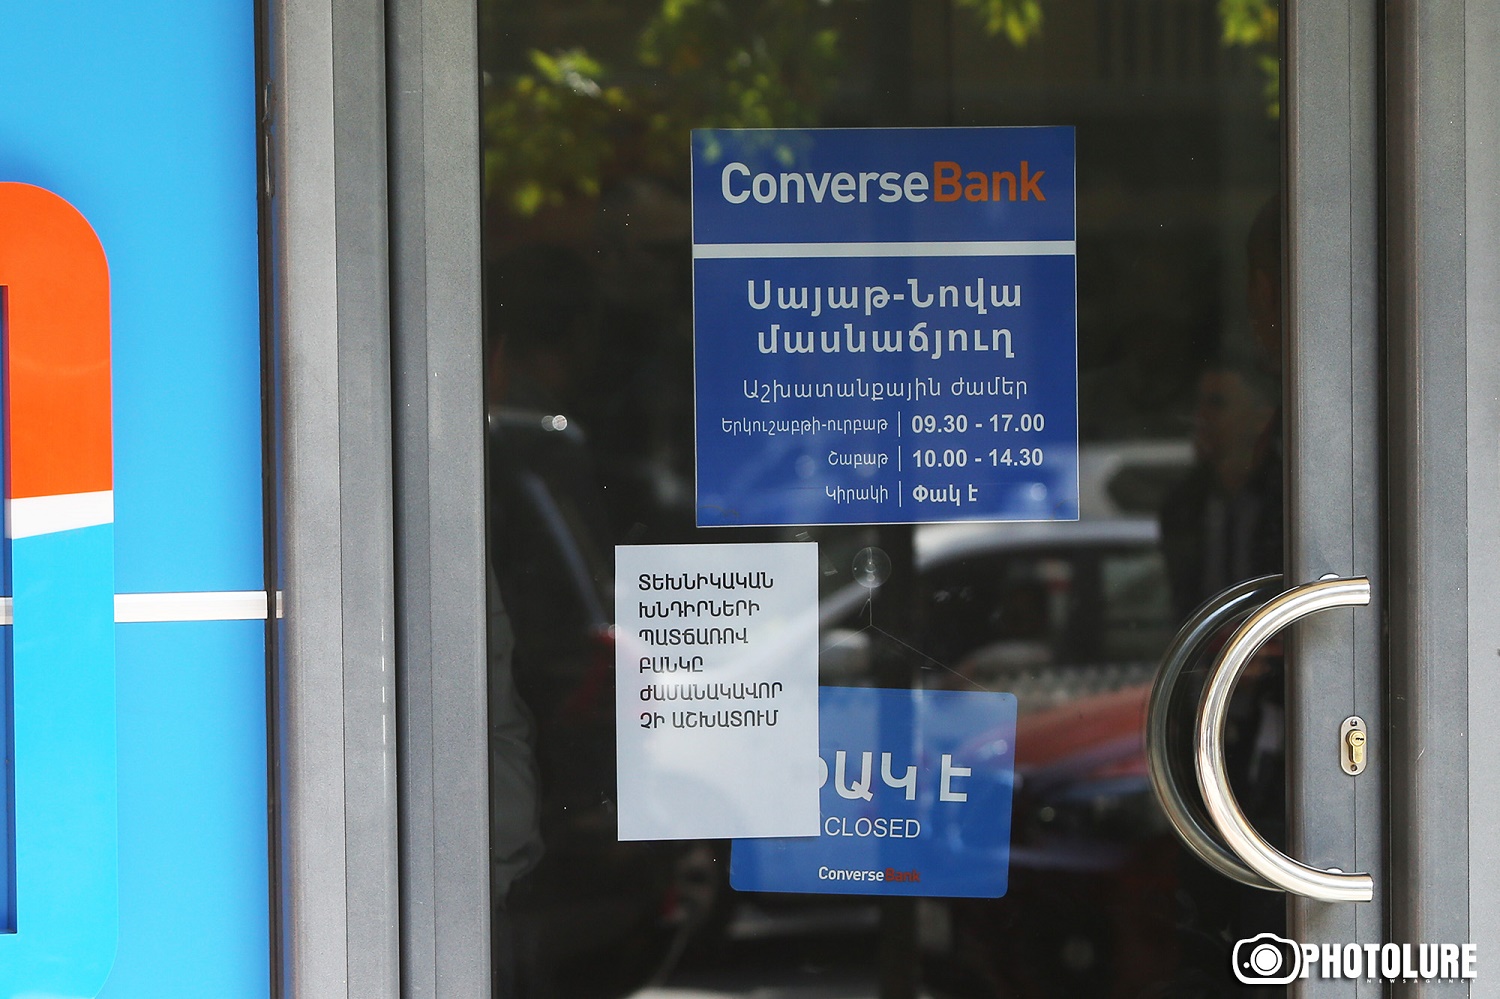 Կոնվերս բանկի թալանված մասնաճյուղում նոր կառավարիչ են նշանակել